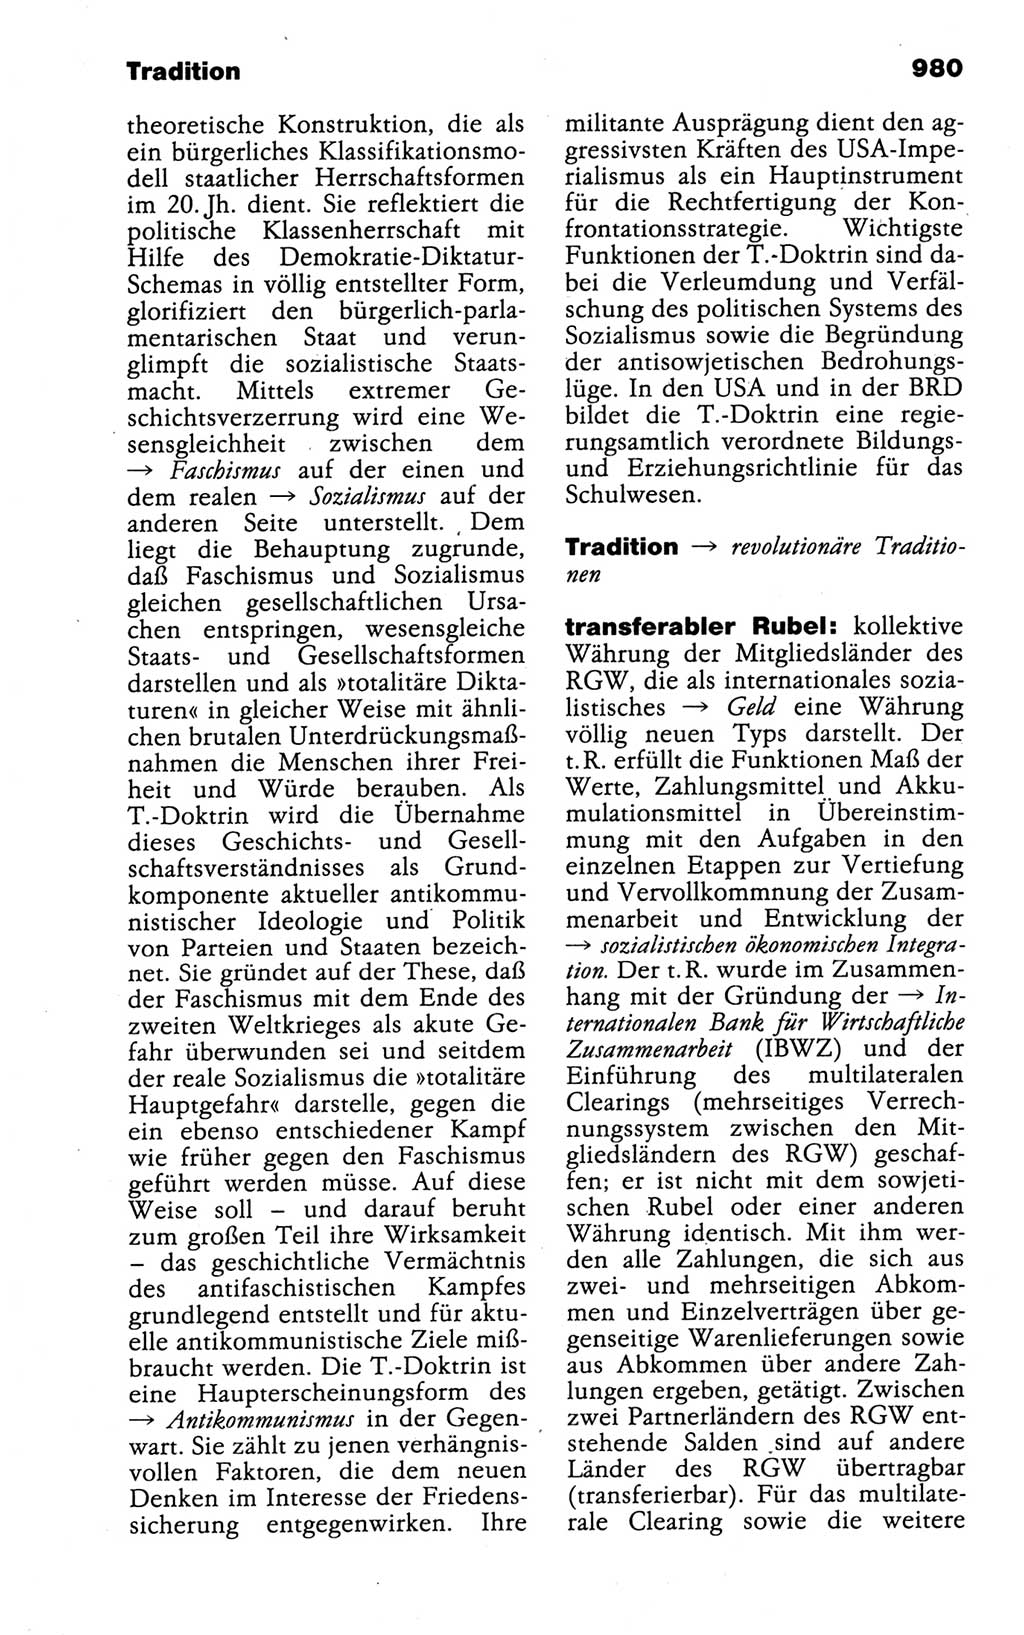 Kleines politisches Wörterbuch [Deutsche Demokratische Republik (DDR)] 1988, Seite 980 (Kl. pol. Wb. DDR 1988, S. 980)